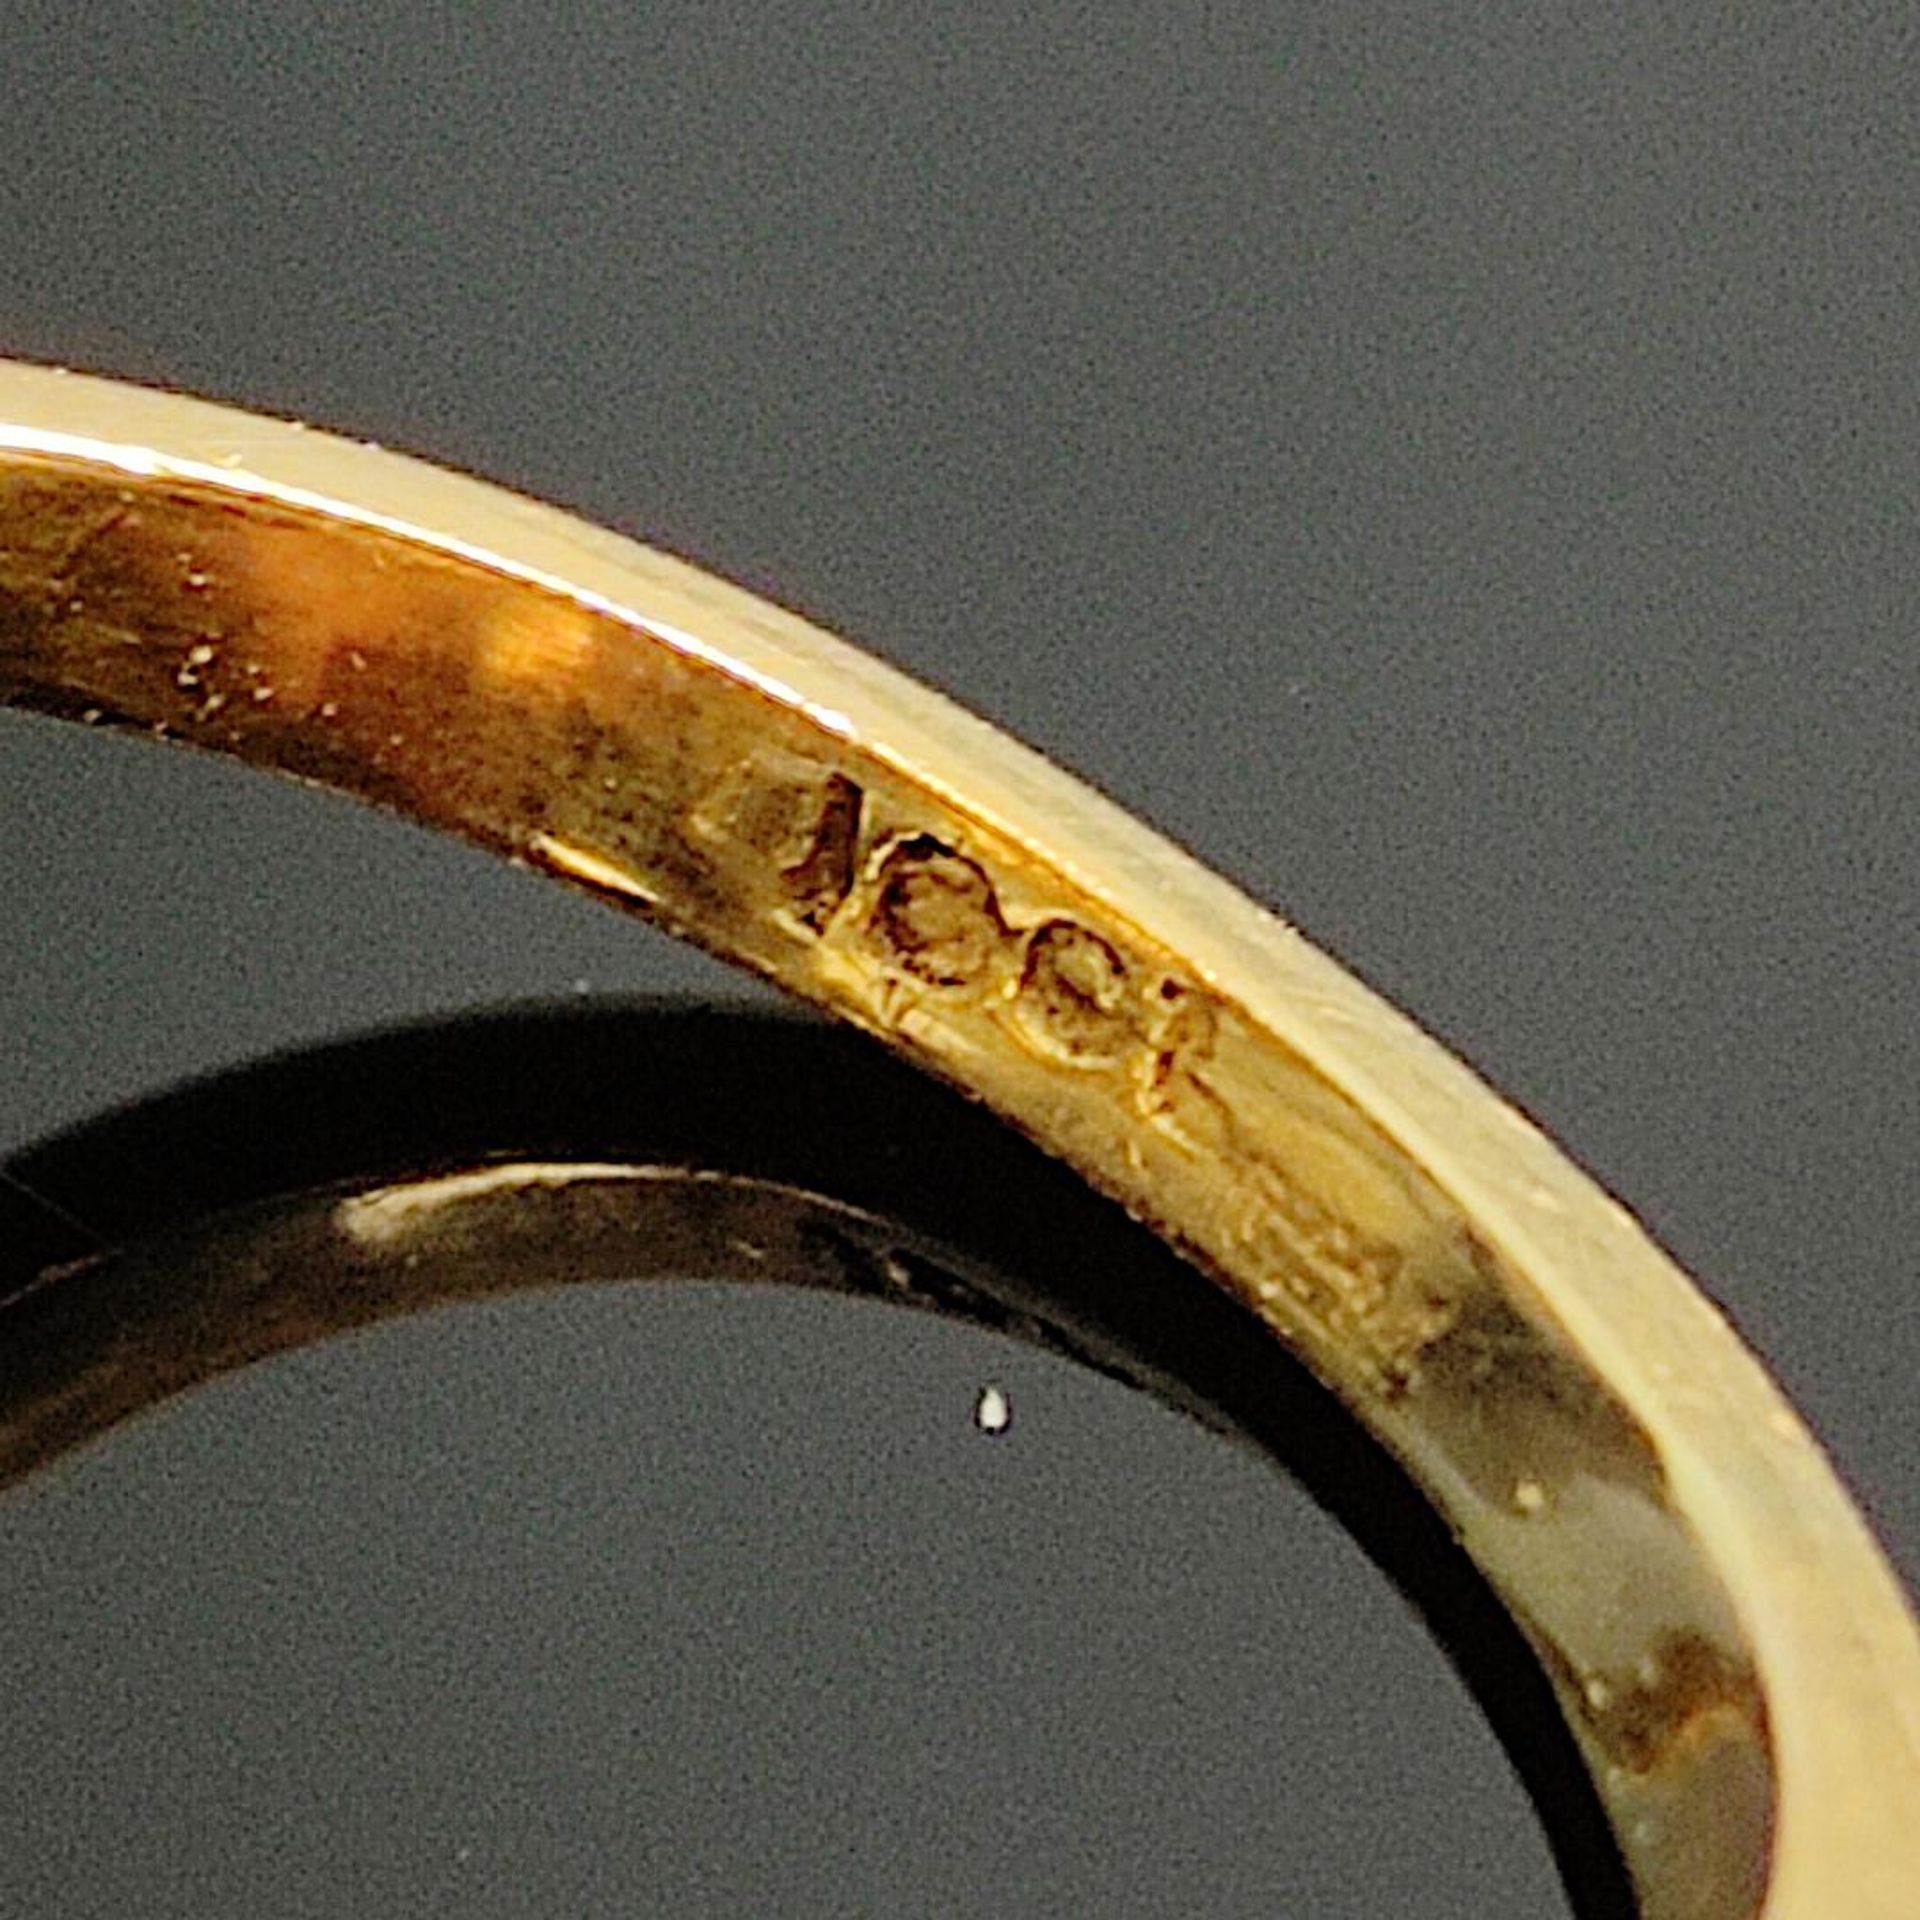 Ausgefallener Opal-Ring, 750/18K Weiß-/Gelbgold (punziert), Gesamtgewicht 4,41g, mittig ovaler Opal - Bild 3 aus 3